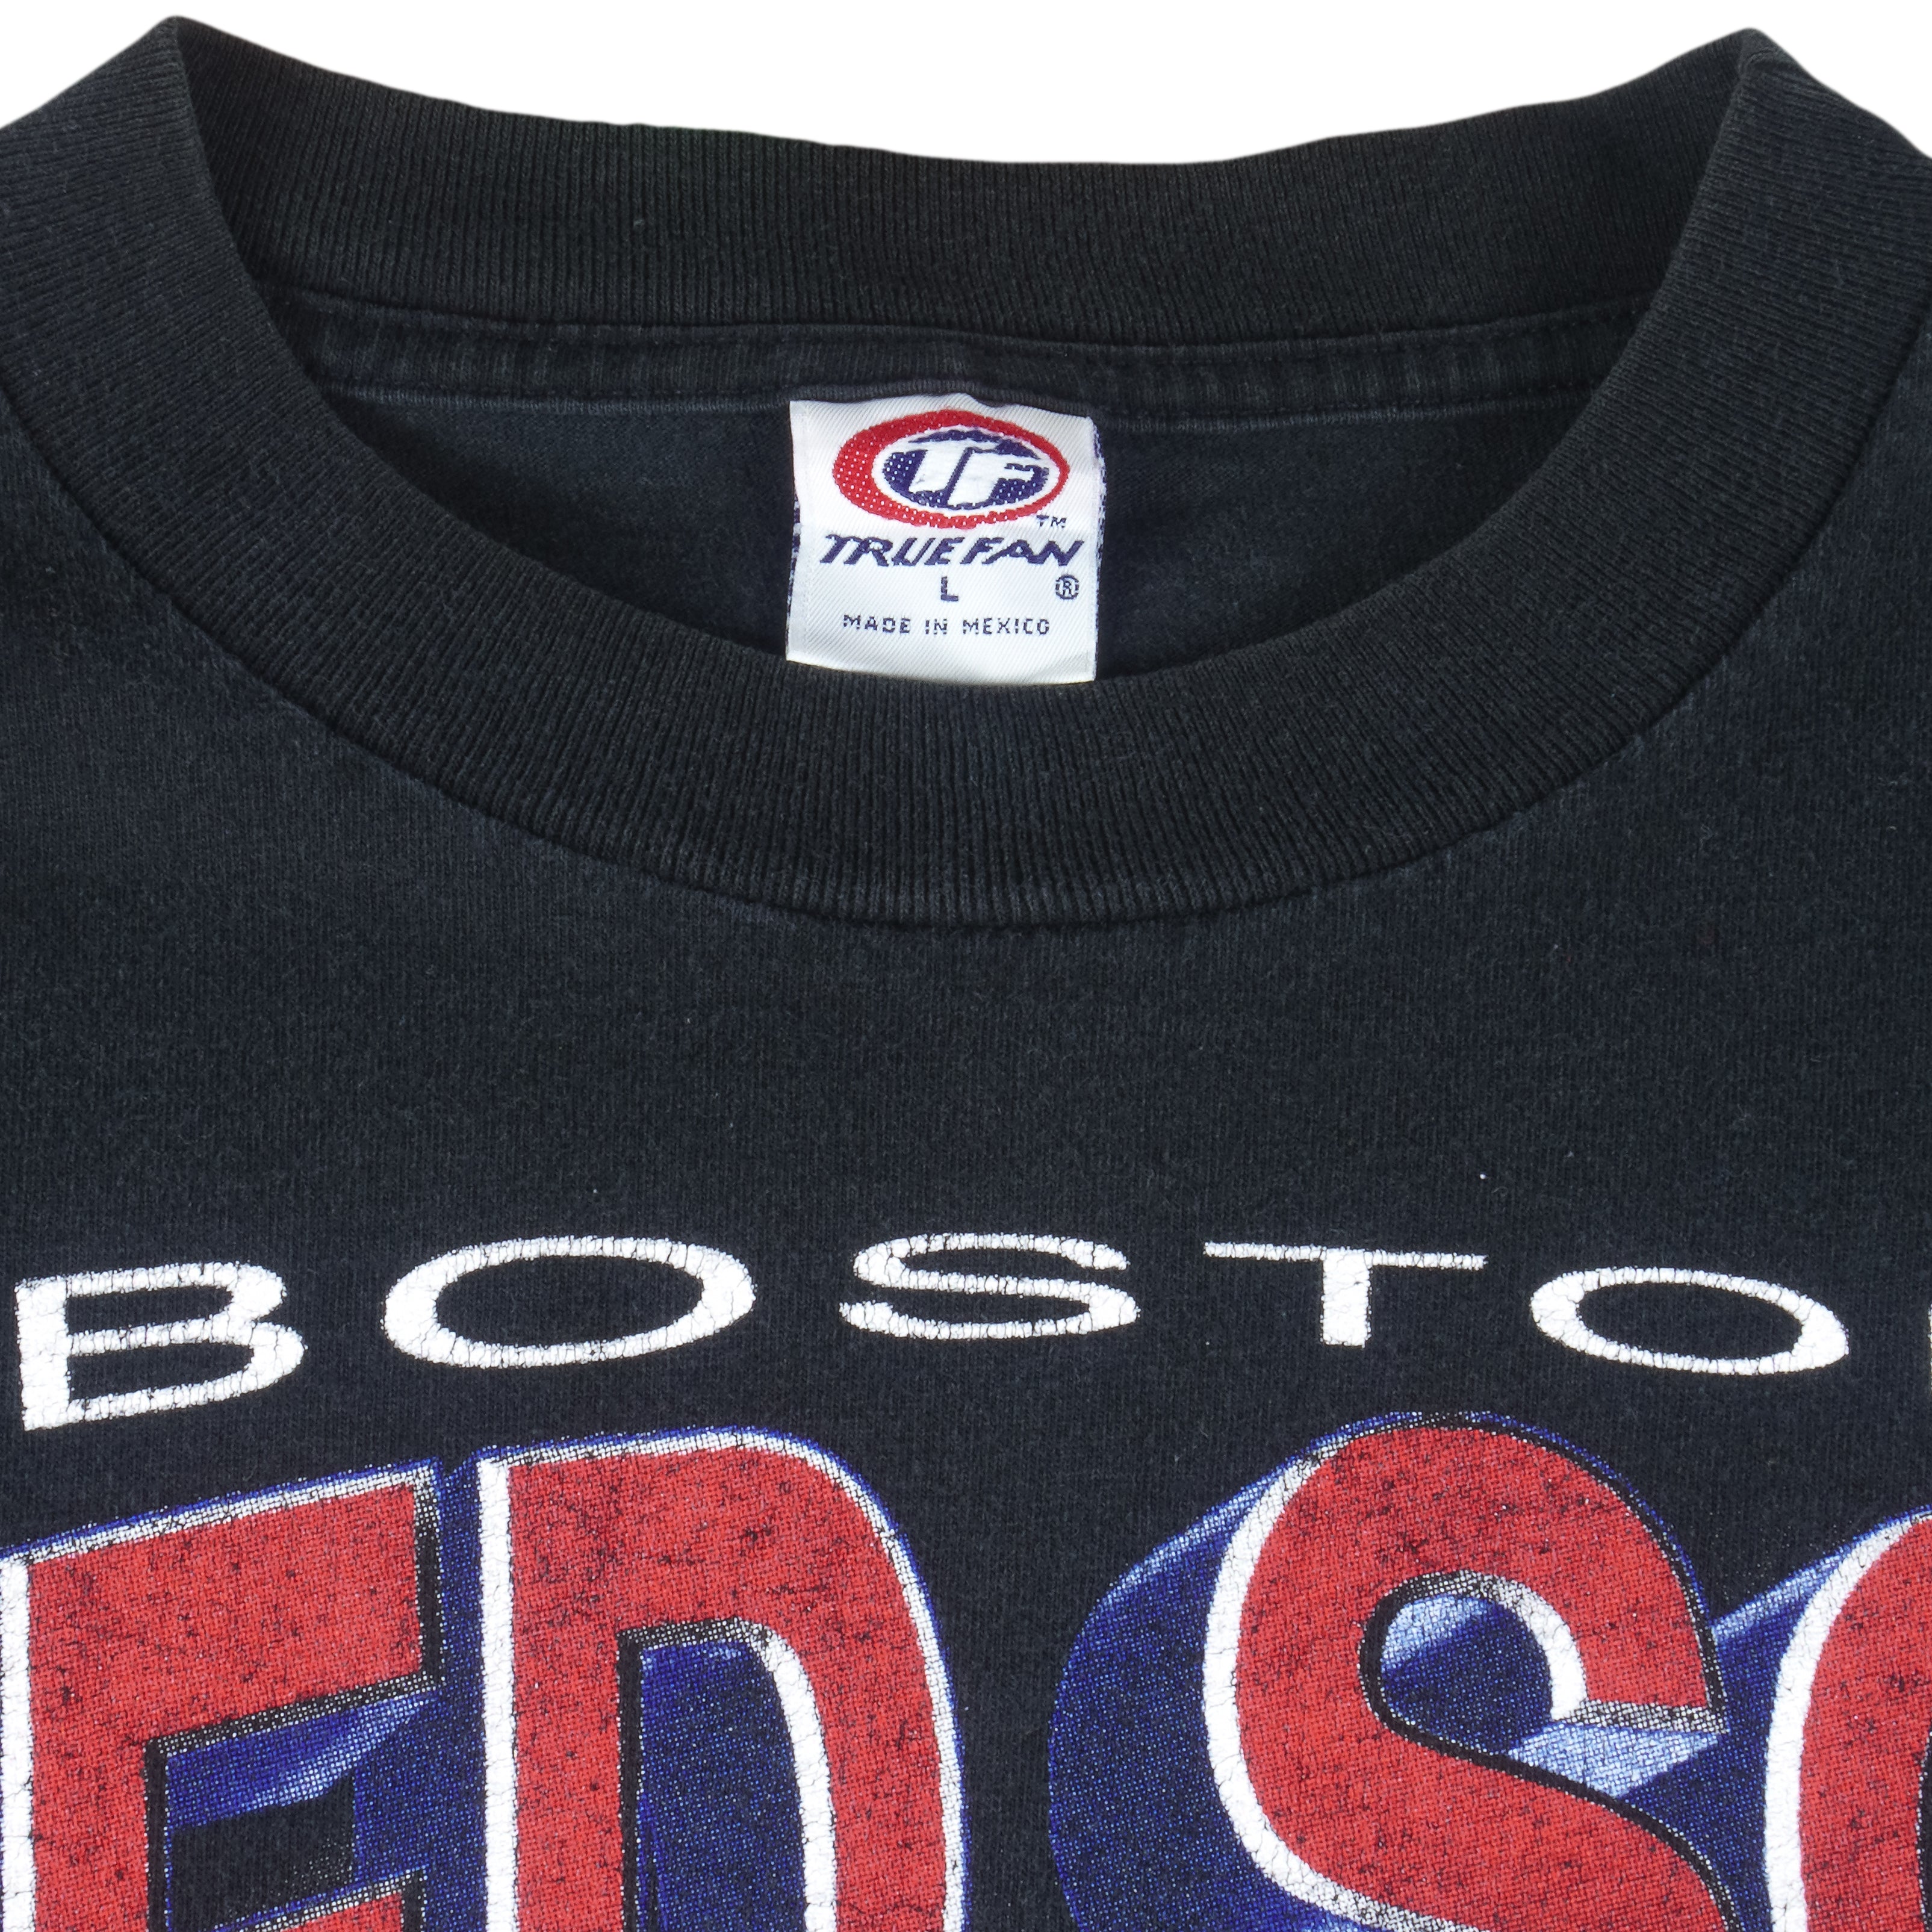 Vintage MLB Boston Red Sox T-shirt